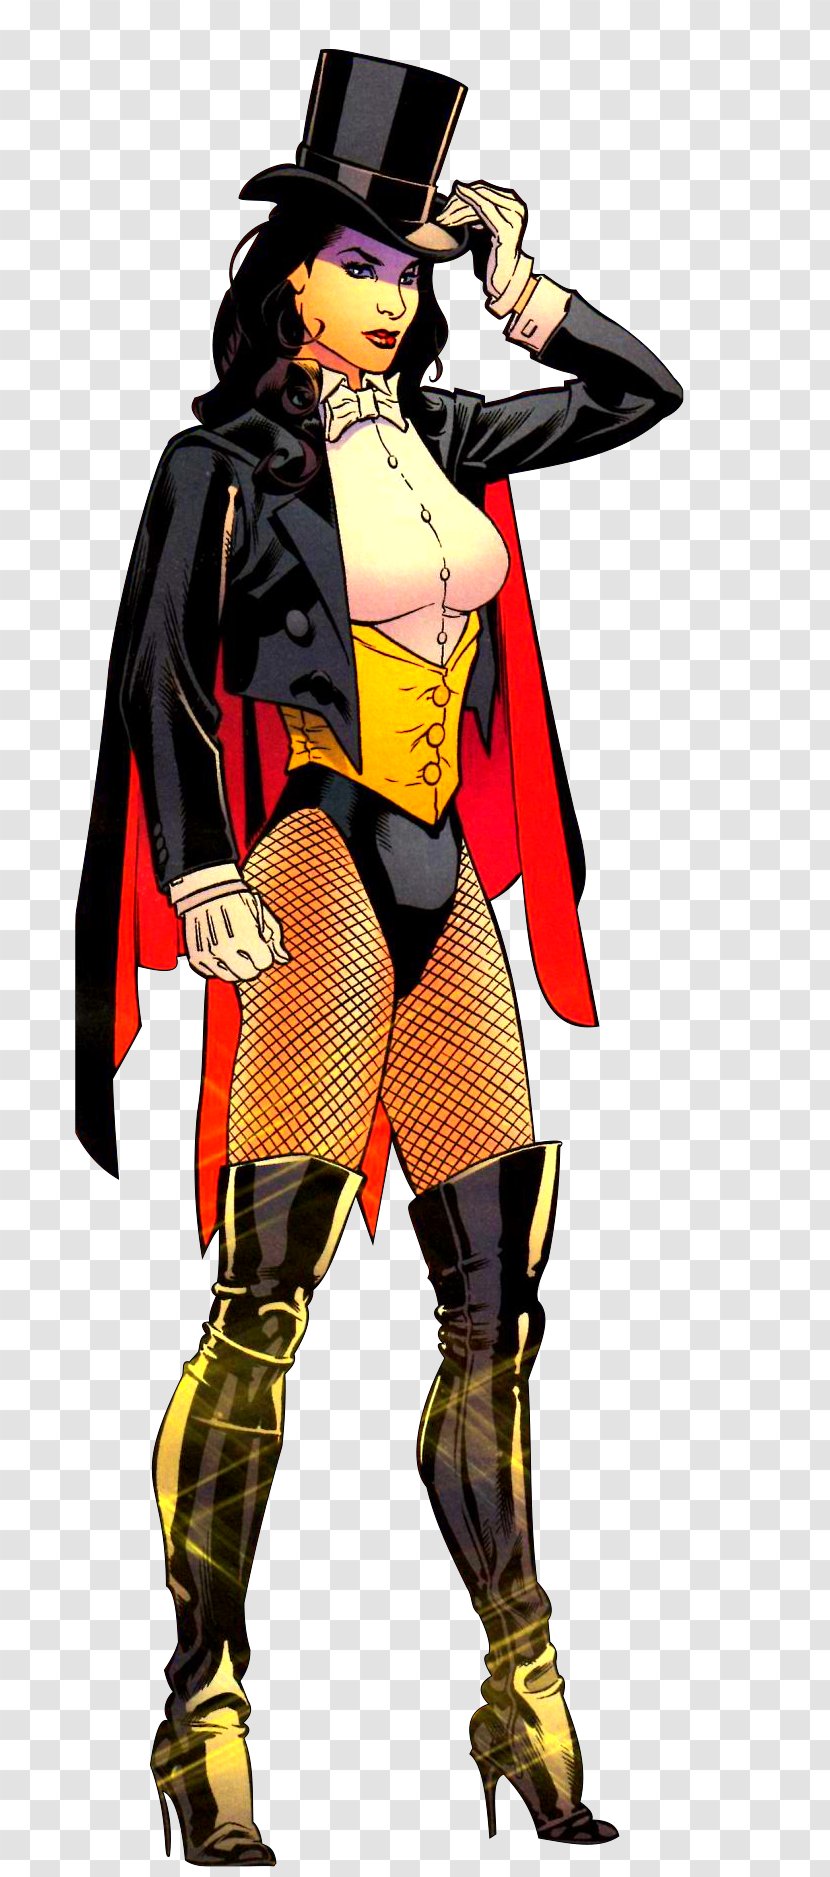 Injustice: Gods Among Us Zatanna Raven DC Comics - Cartoon - HD Transparent PNG